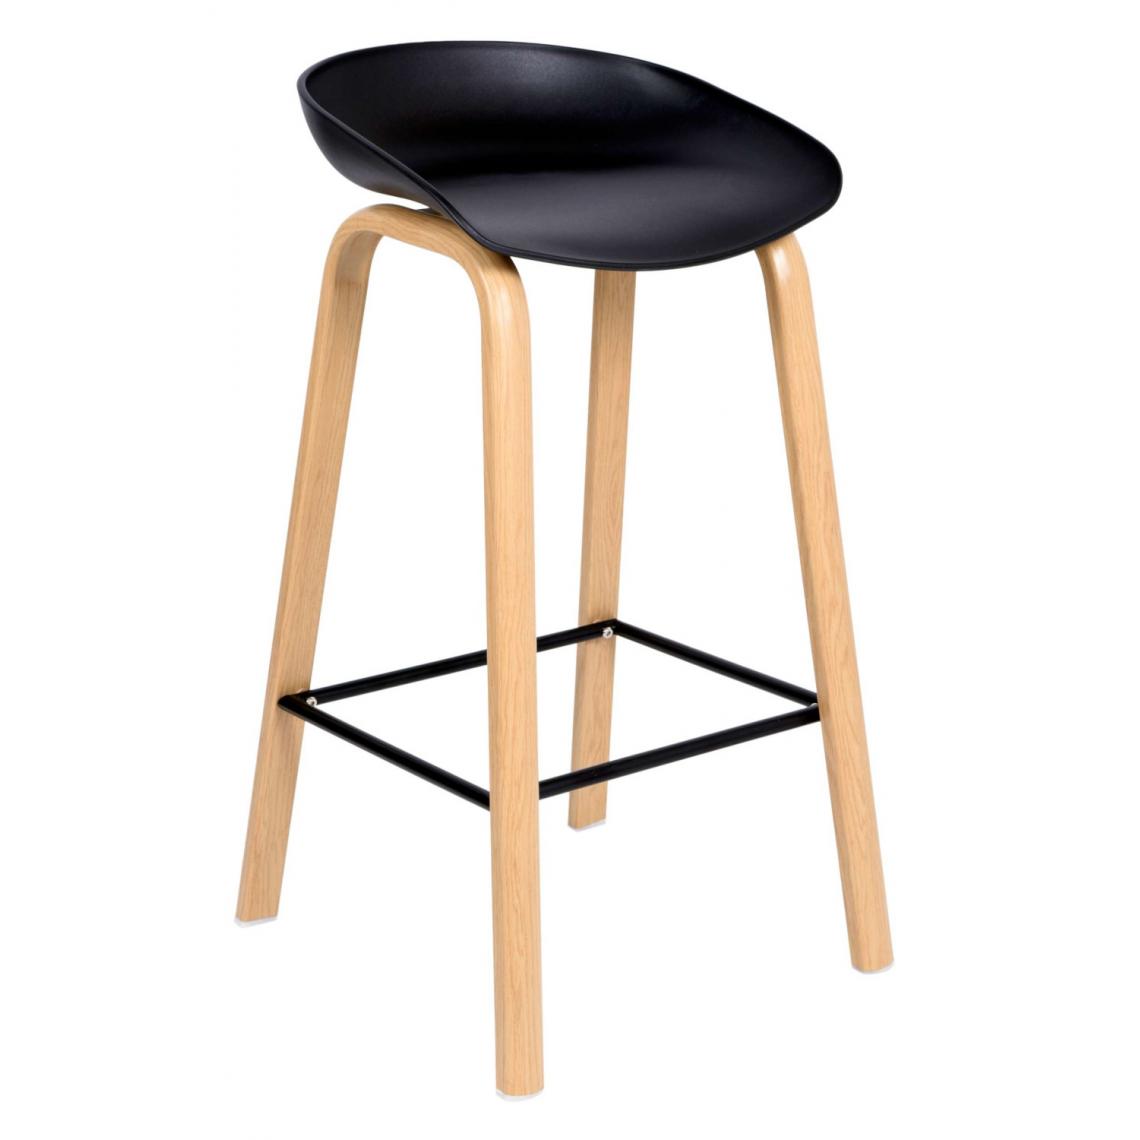 Hucoco - JOPLIN - Tabouret de bar style scandinave 85x49x46 cm imitation bois| Chaise haute de cuisine - Hoker - Mobilier moderne bar - Noir - Tabourets